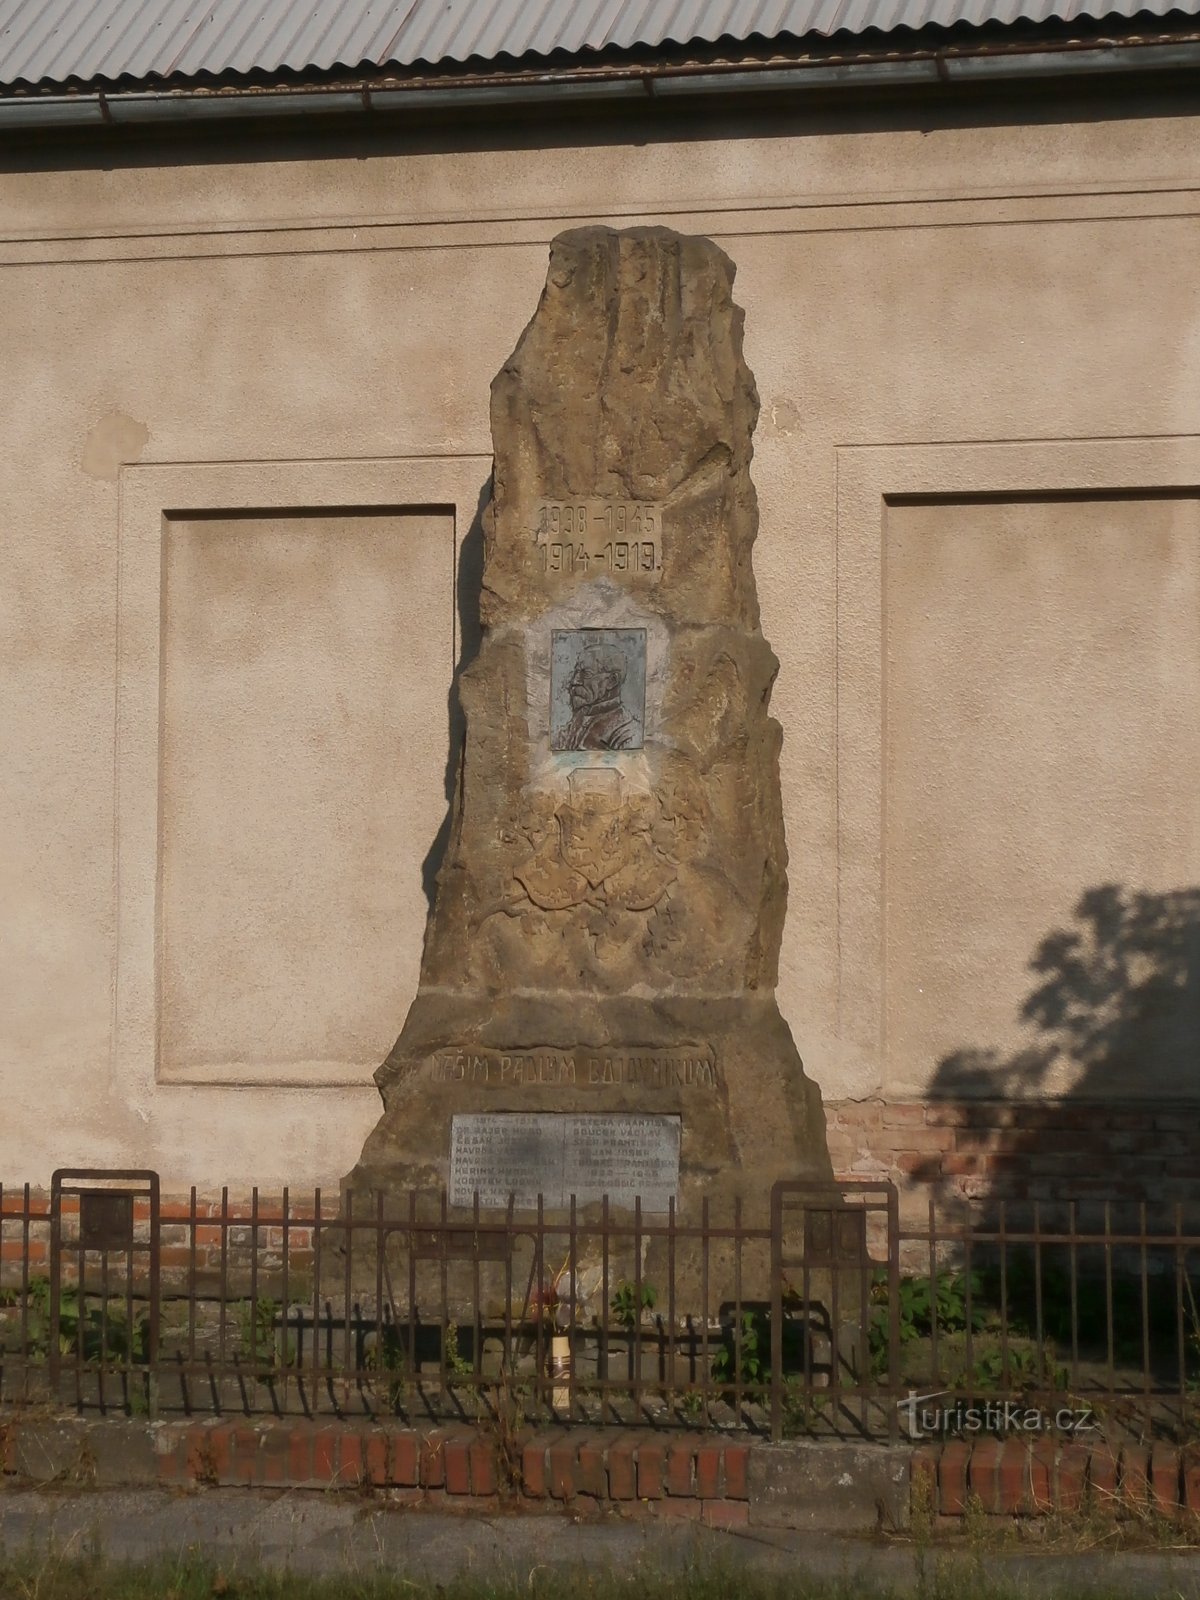 Đài tưởng niệm những người đã chết trong Chiến tranh thế giới thứ nhất (Třebeš)